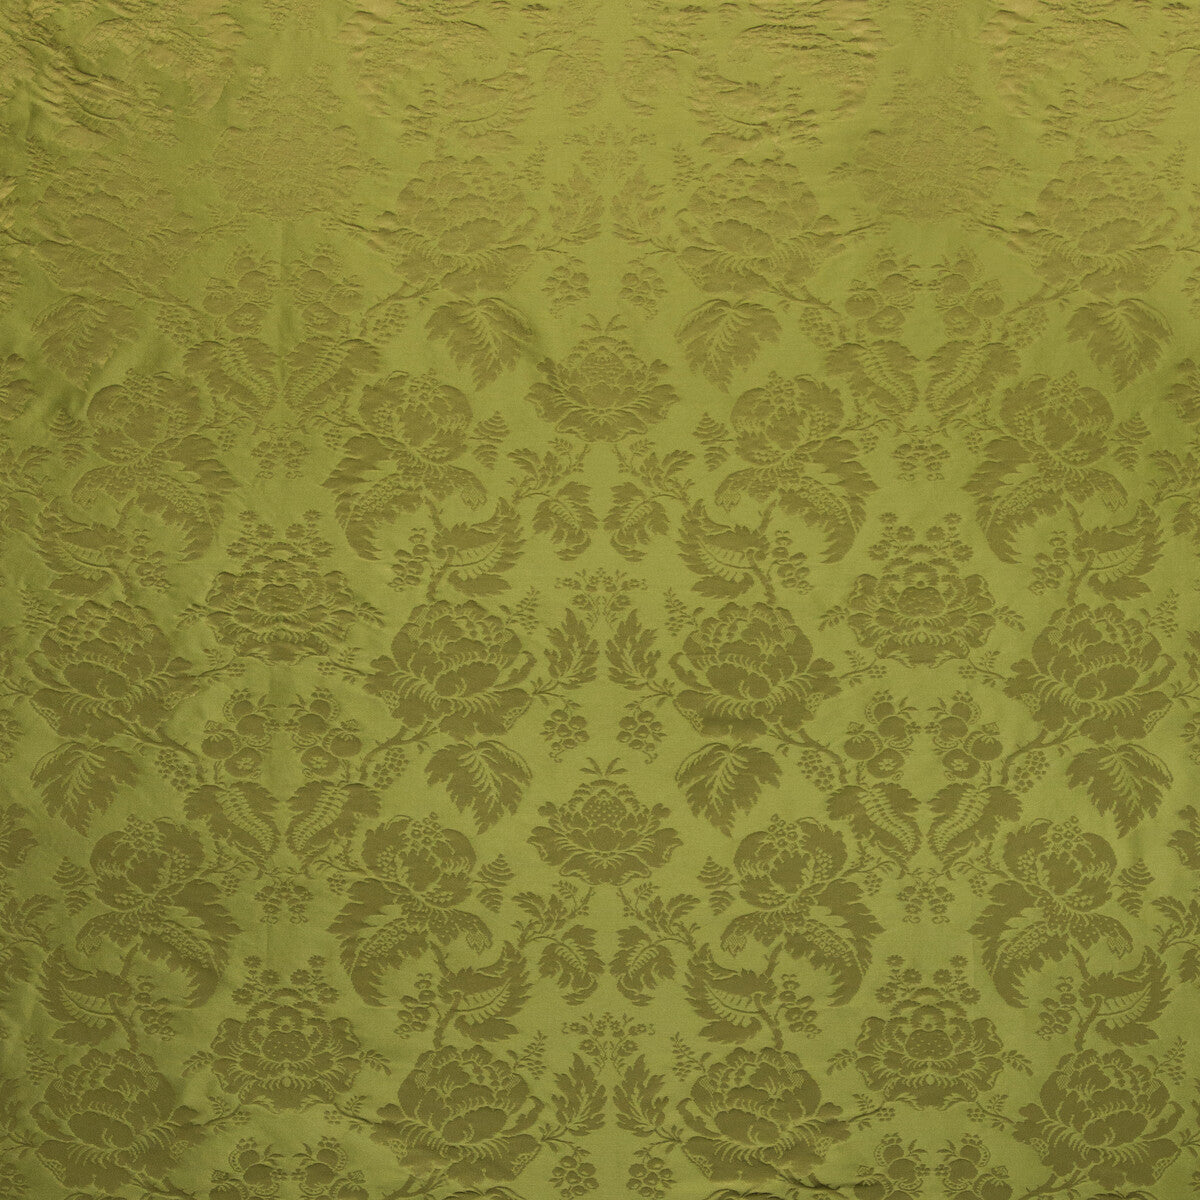 Moulins Damask fabric in olive color - pattern BR-81035.30.0 - by Brunschwig &amp; Fils